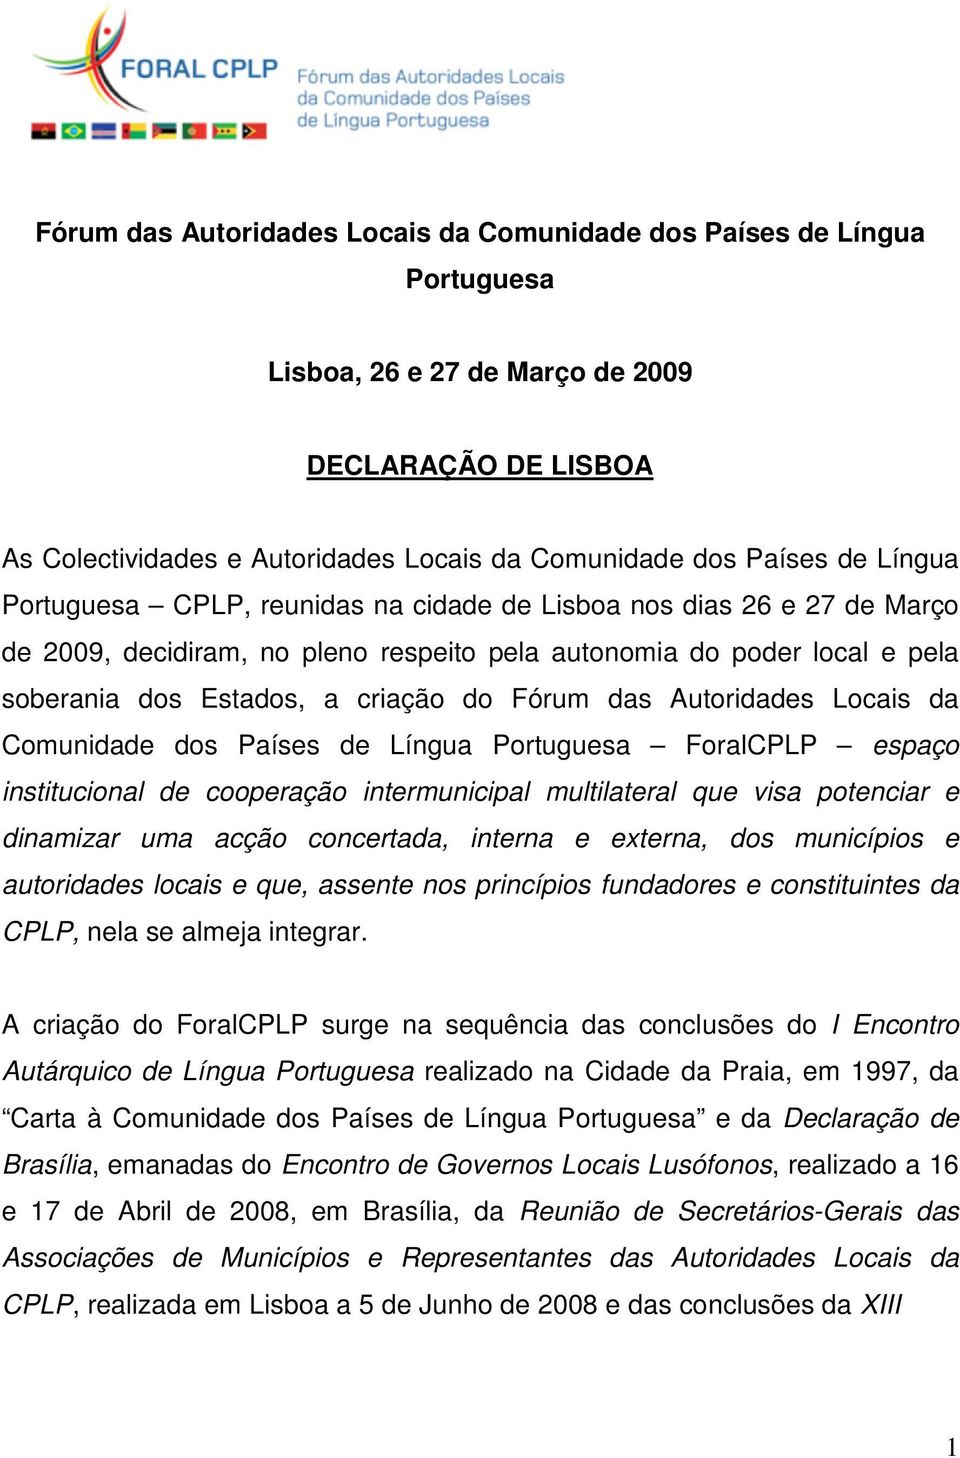 Autoridades Locais da Comunidade dos Países de Língua Portuguesa ForalCPLP espaço institucional de cooperação intermunicipal multilateral que visa potenciar e dinamizar uma acção concertada, interna